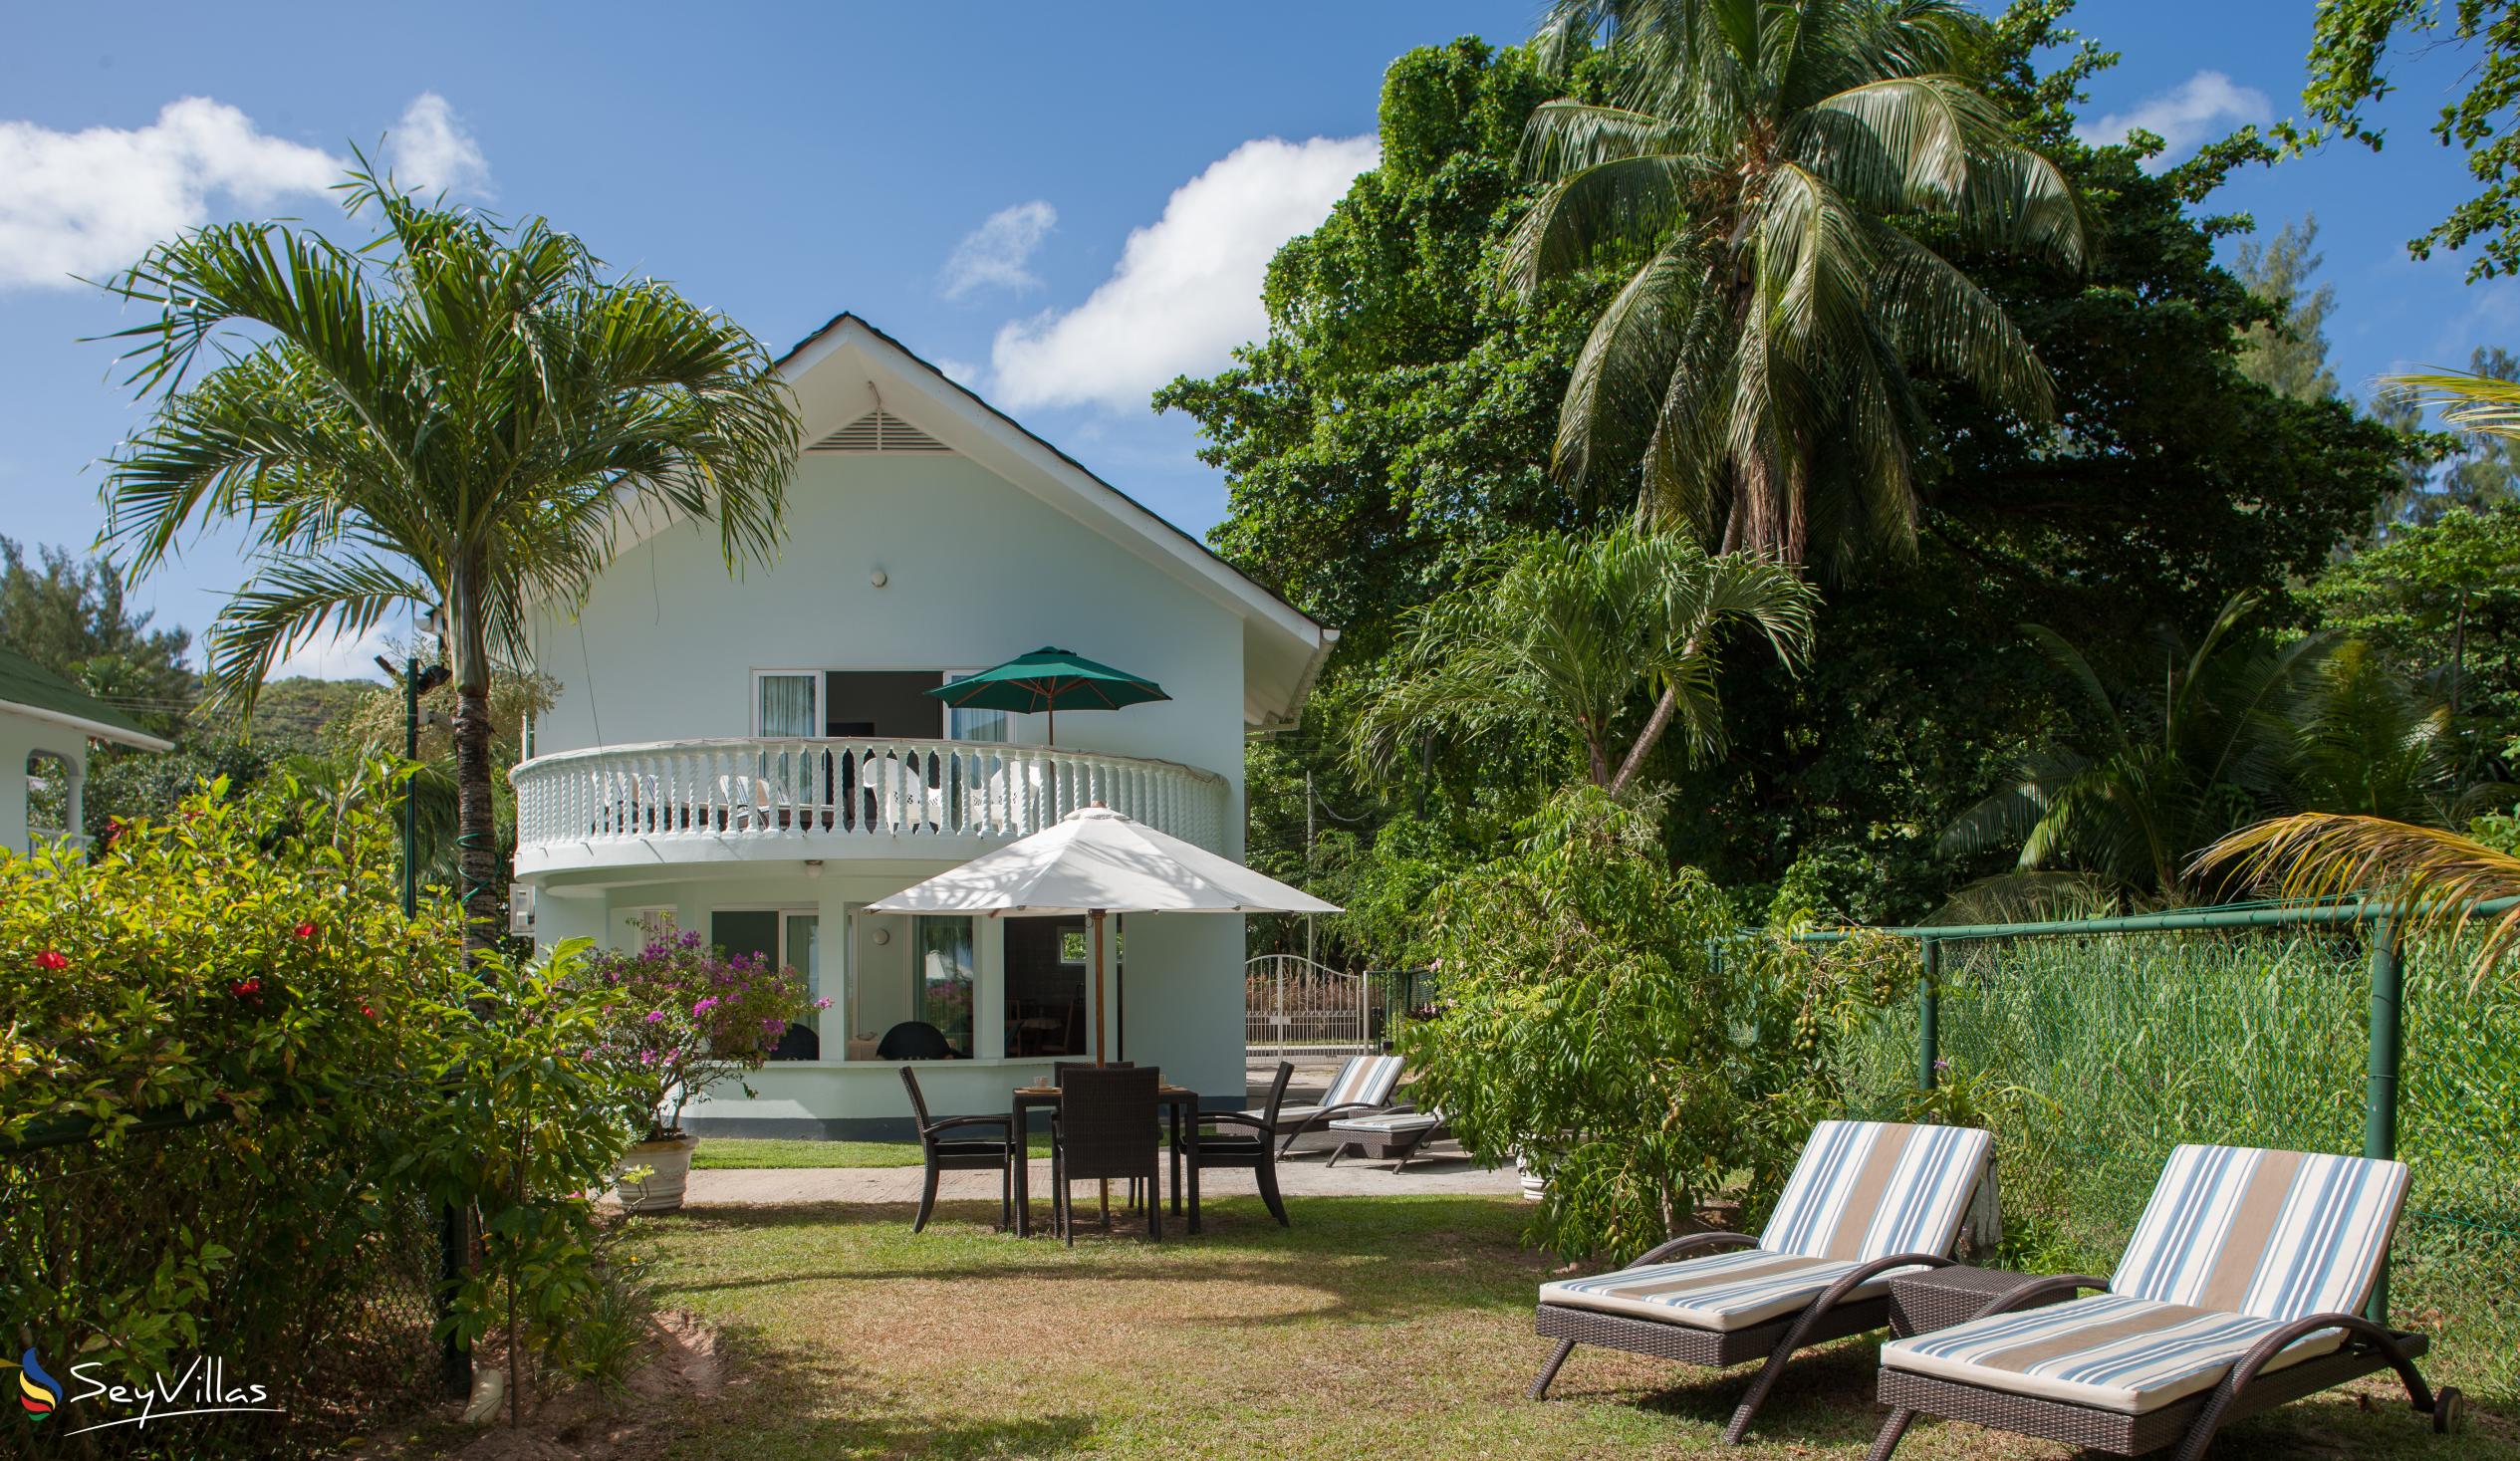 Foto 10: Ocean Villa - Aussenbereich - Praslin (Seychellen)